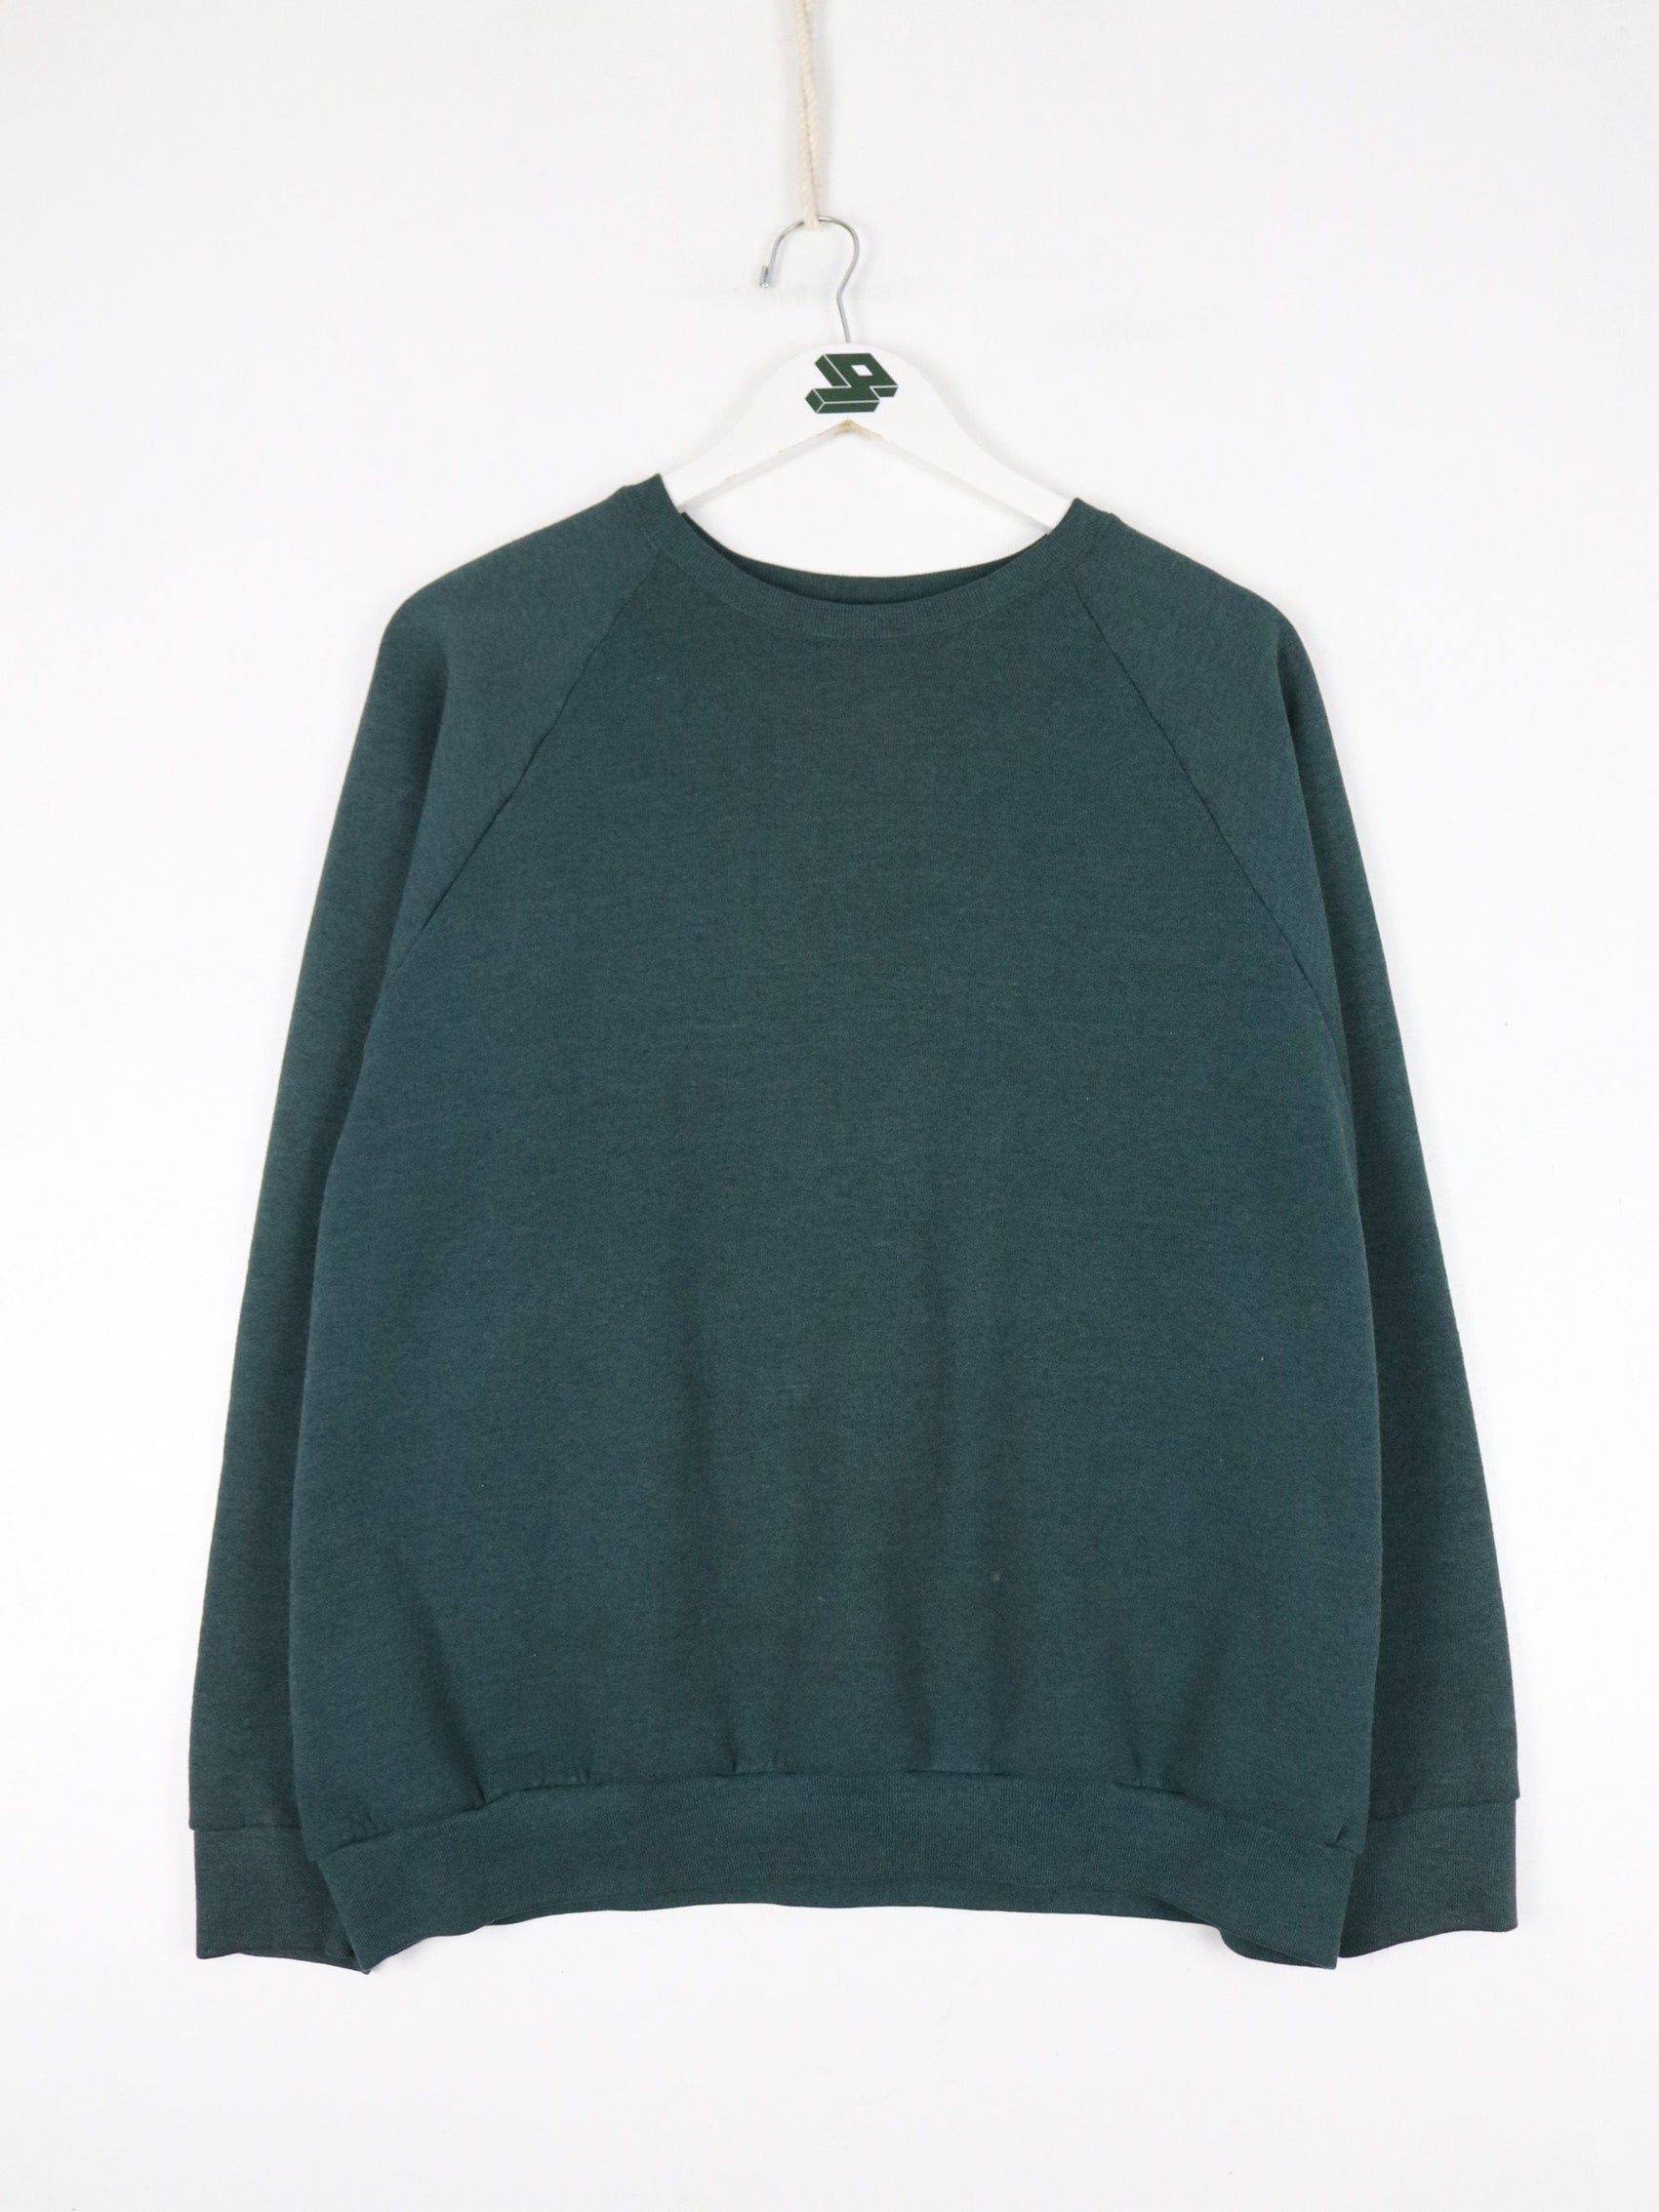 Other Sweatshirts & Hoodies Vintage Fruit of the Loom Sweatshirt Fits Mens Large Green Blank